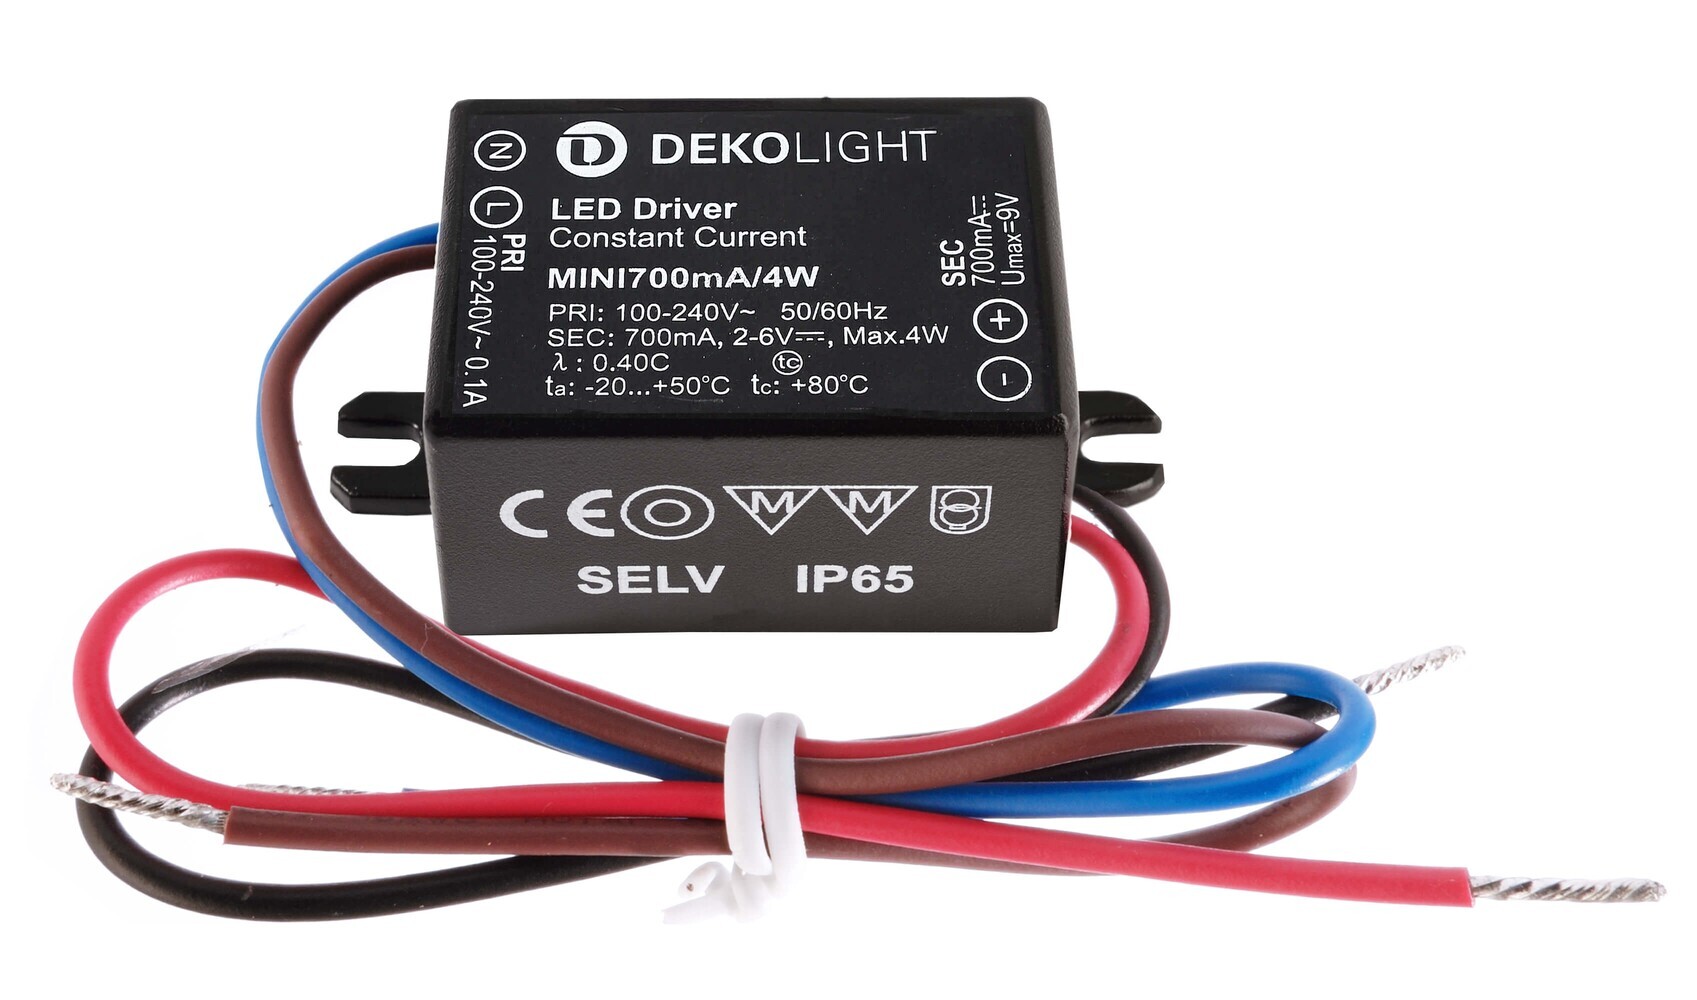 Hochwertiges LED Netzteil von der Marke Deko-Light in einem minimalistischen Design